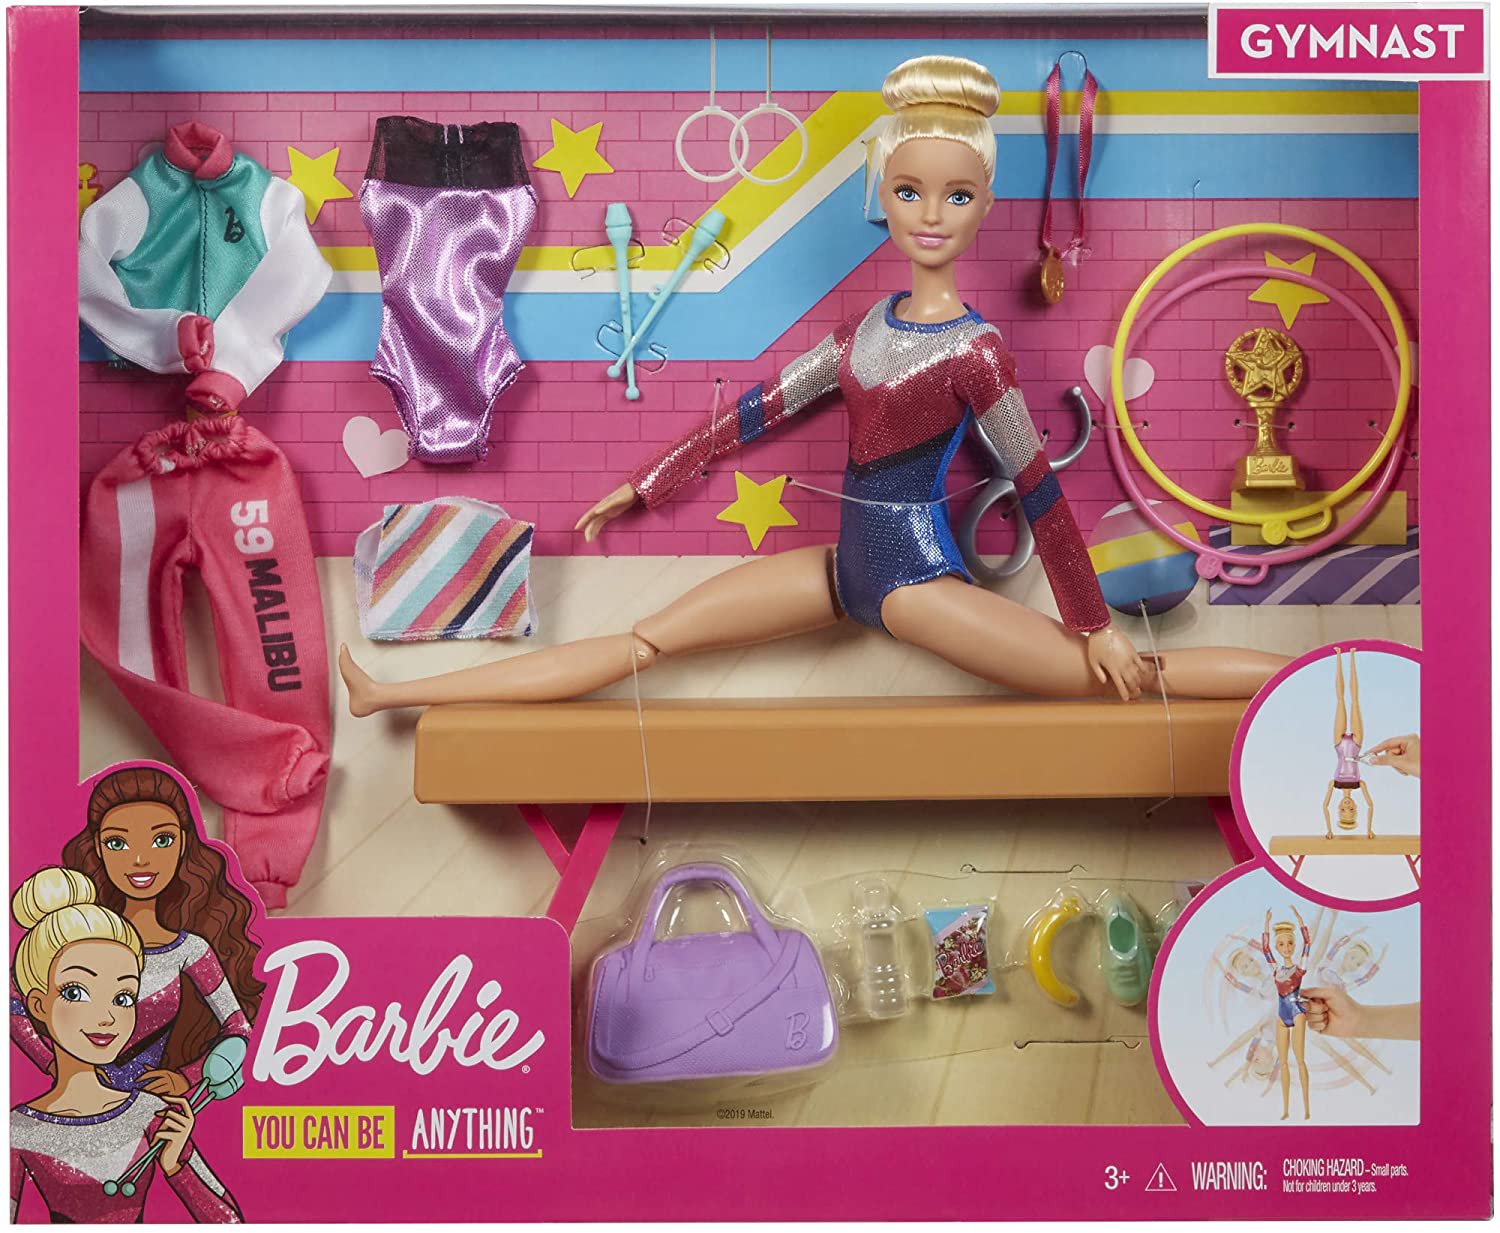 バービー人形 Barbie,バービー(Barbie) おしごとあそび バービーとおしごと! 着せ替え人形 お世話セット  GJM72,マテル(MATTEL),発表会プレゼント,バレエ発表会プレゼント 着せ替え人形のネットショップ通販のお店